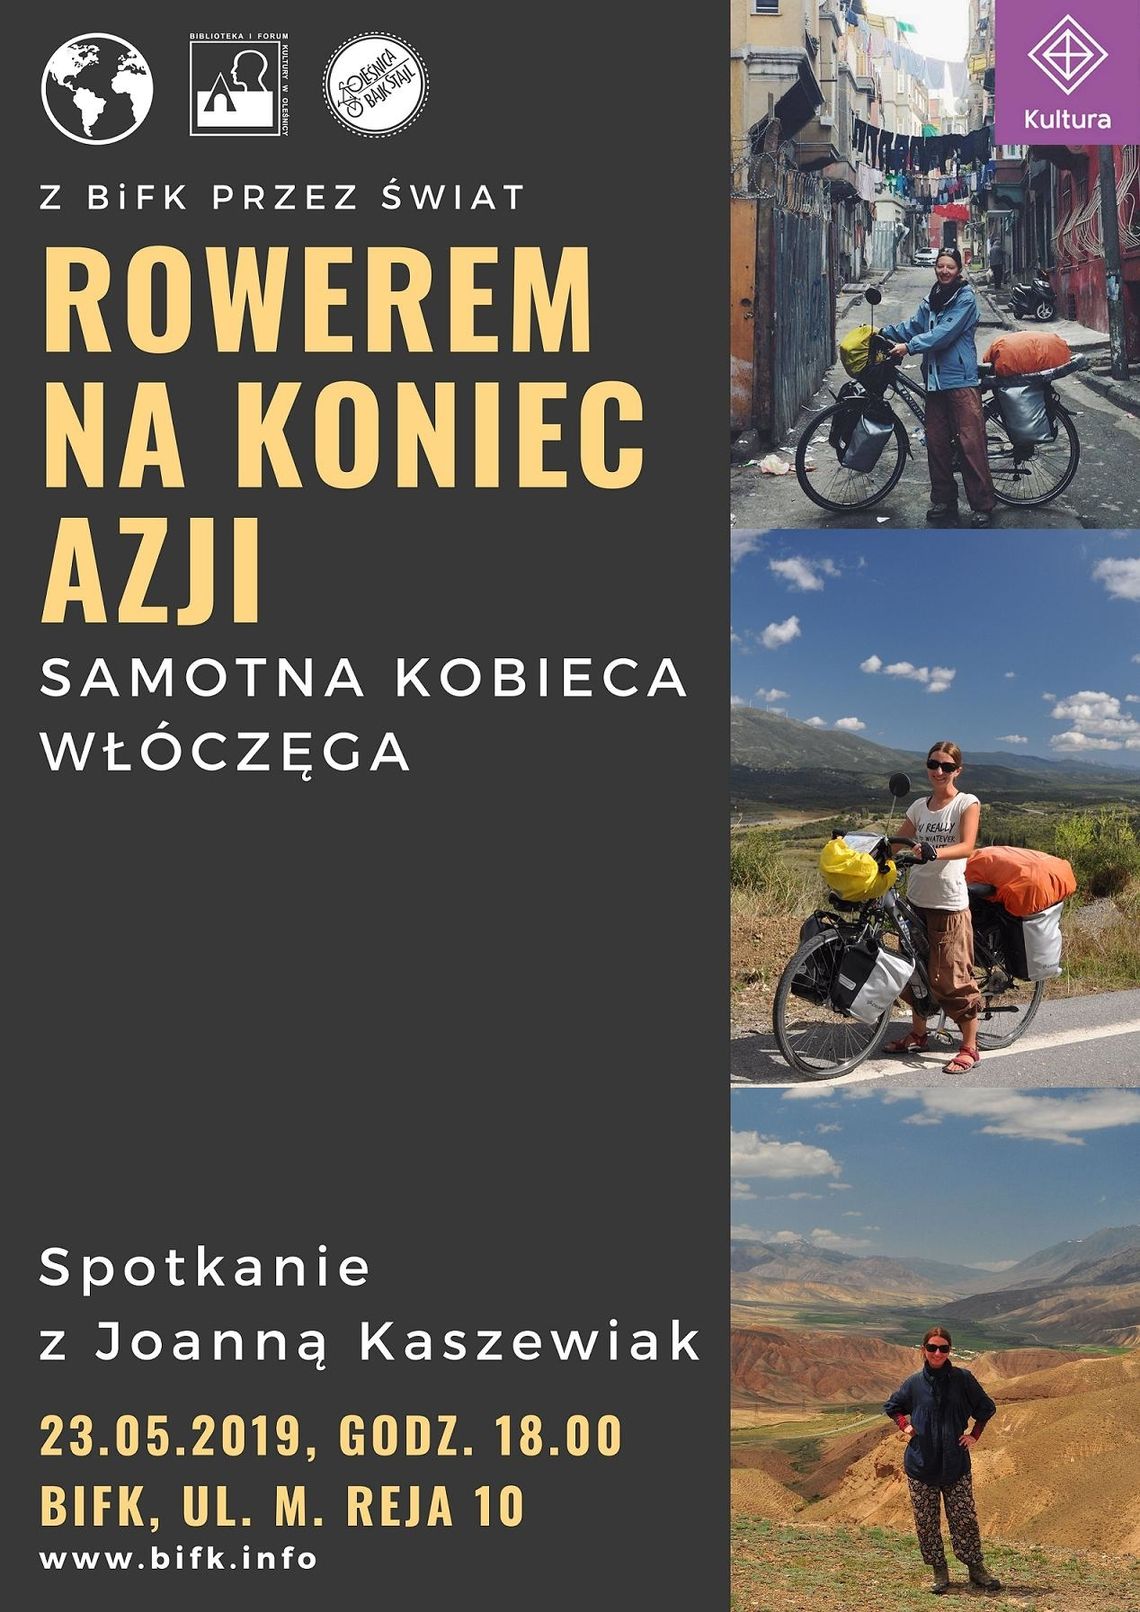 Rowerem przez świat – spotkanie z Joanną Kaszewiak